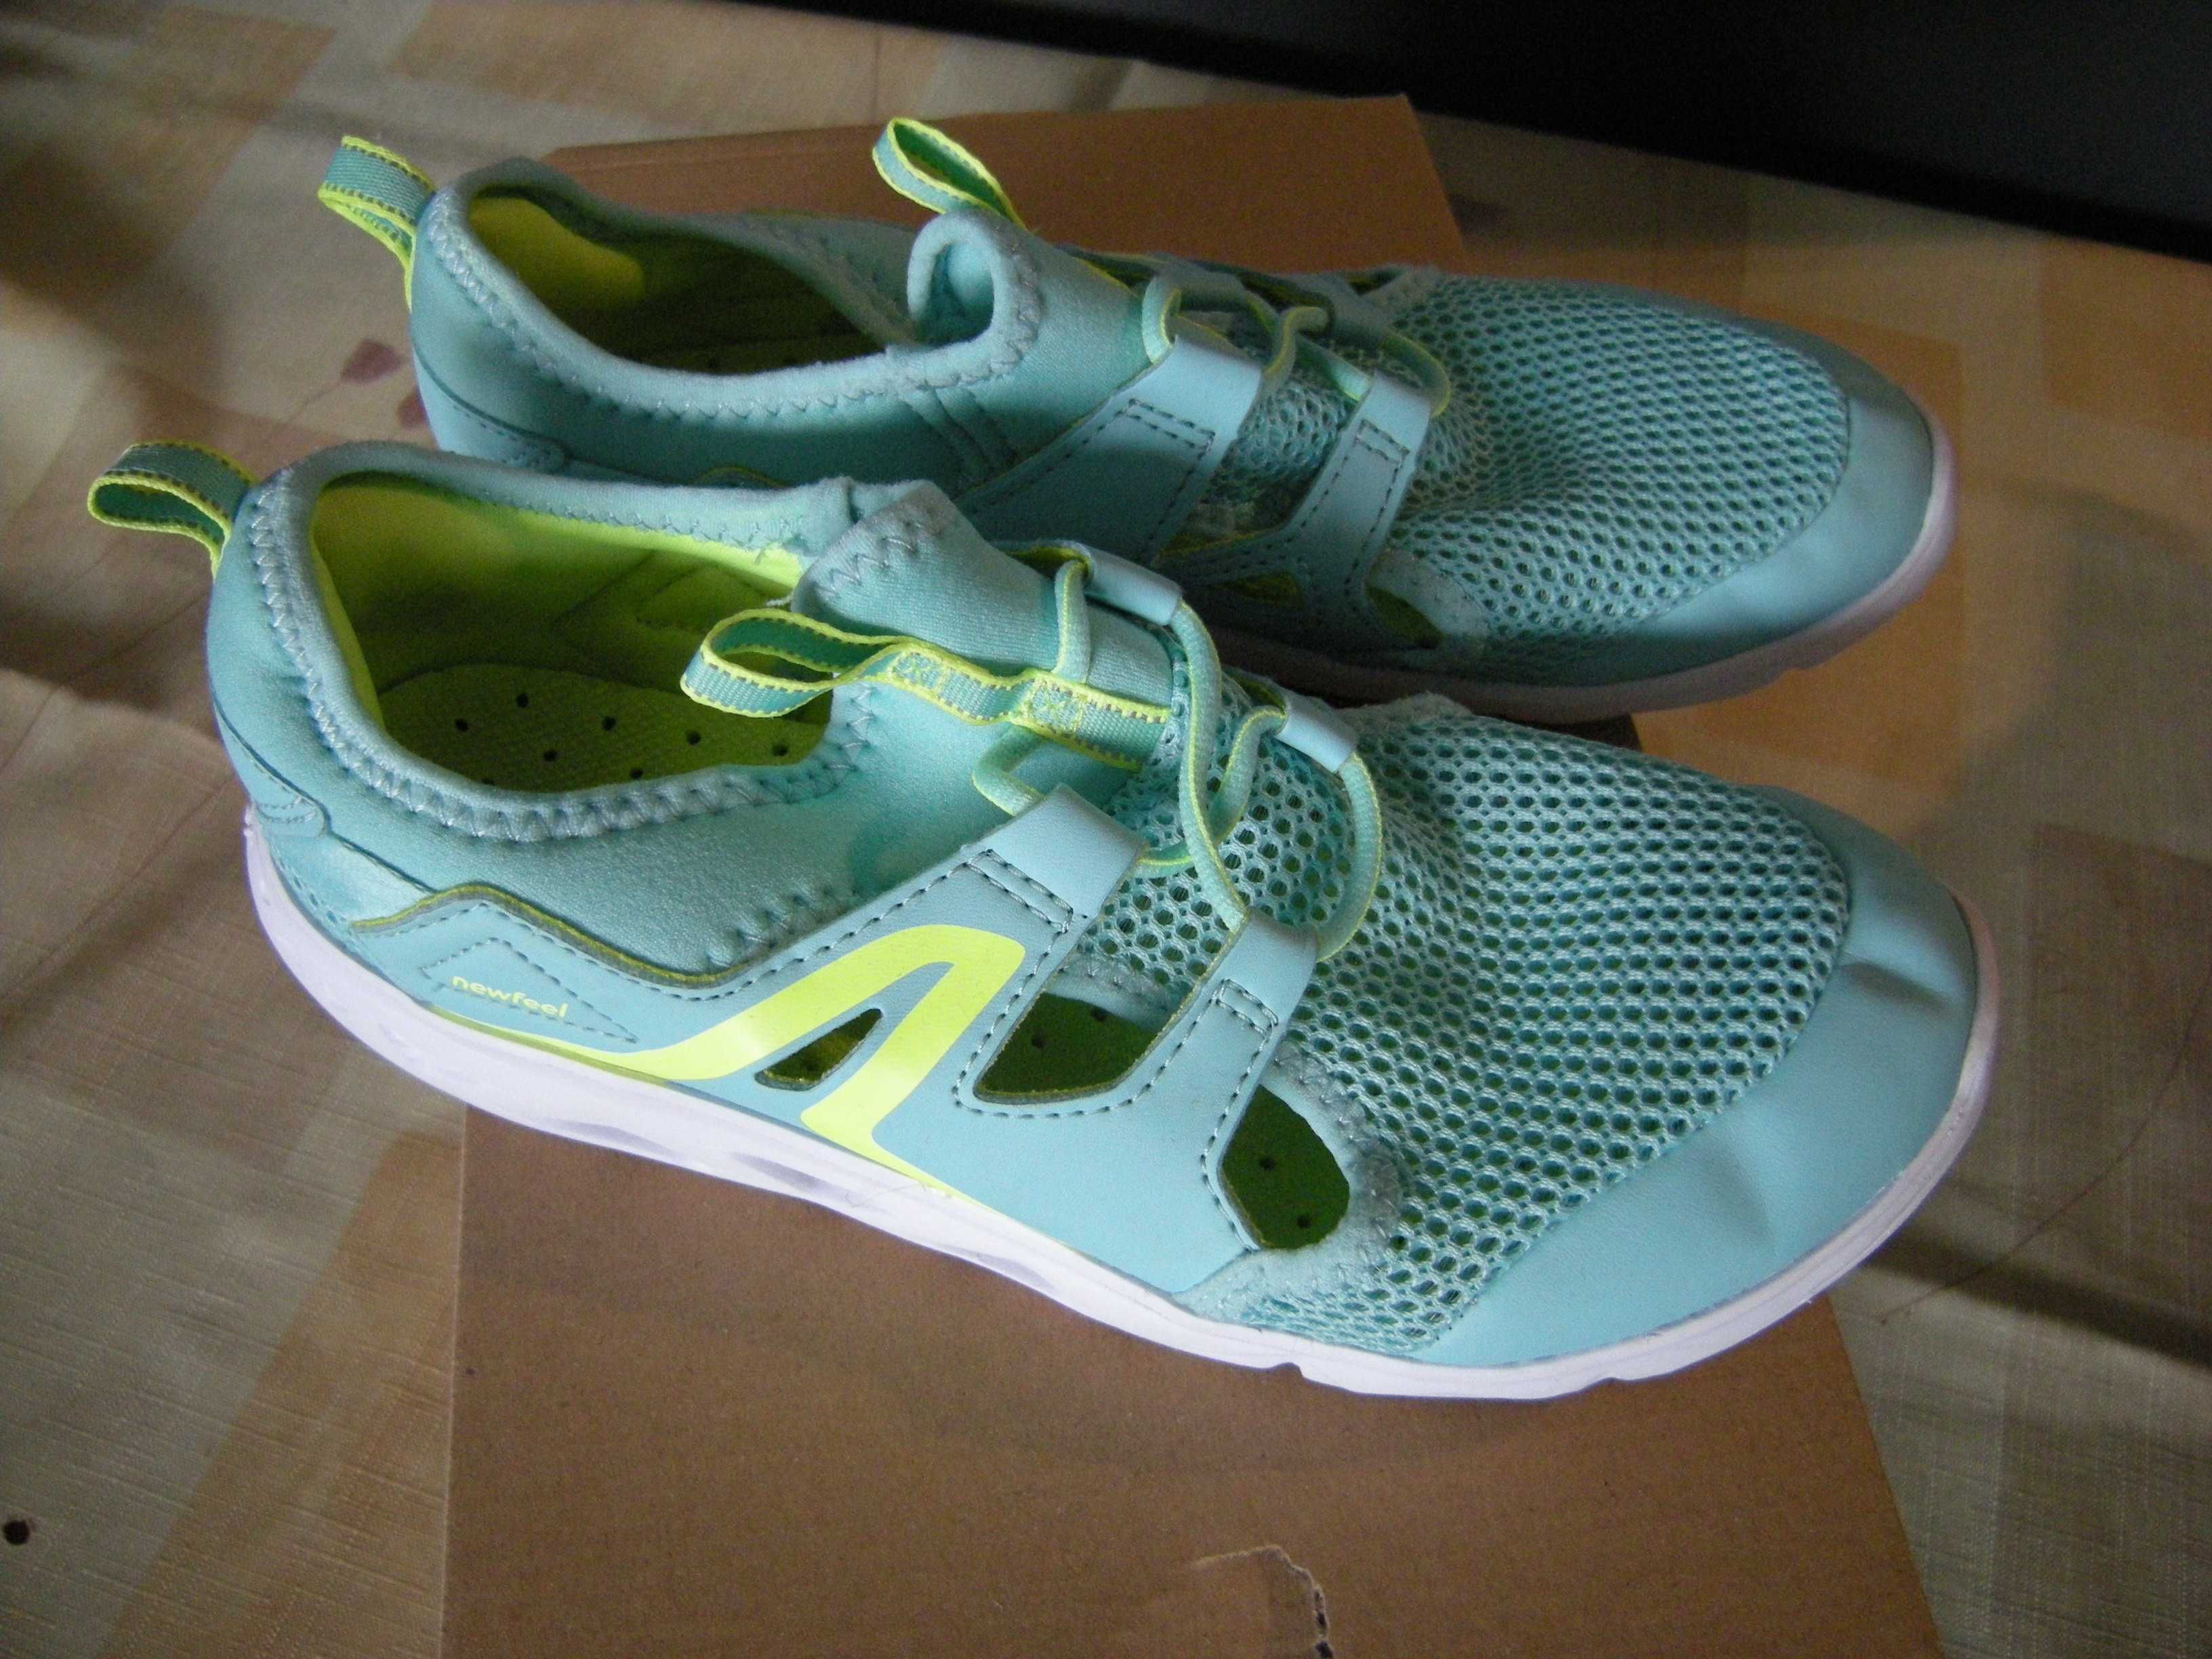 Ultralekkie buty dla dzieci New Feel PW 500 Fresh turkusowe r. 37